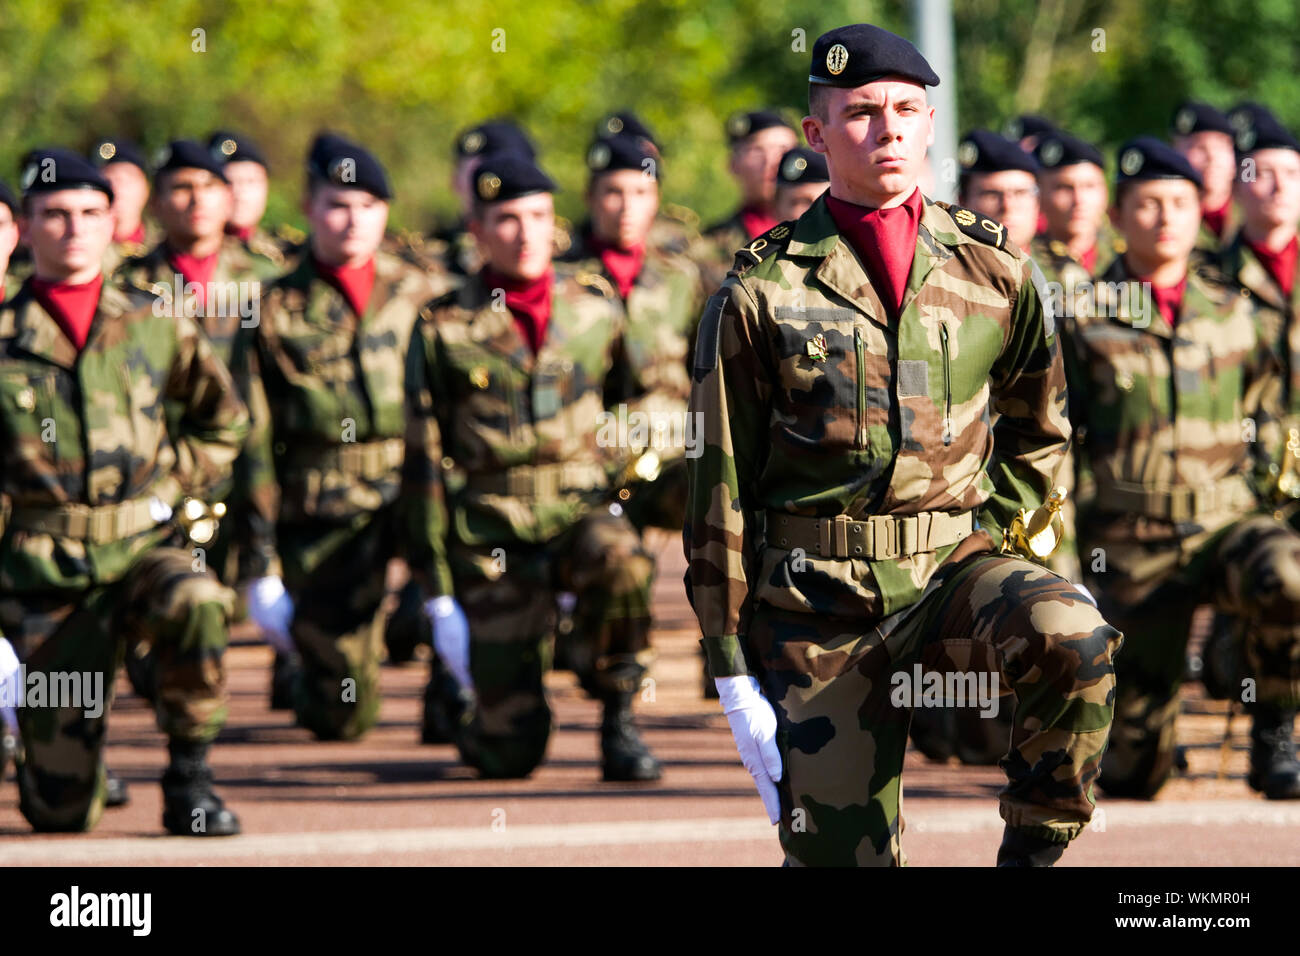 Cérémonie de bienvenue pour les nouveaux élèves à l'École de santé militaire française, Bron, France Banque D'Images